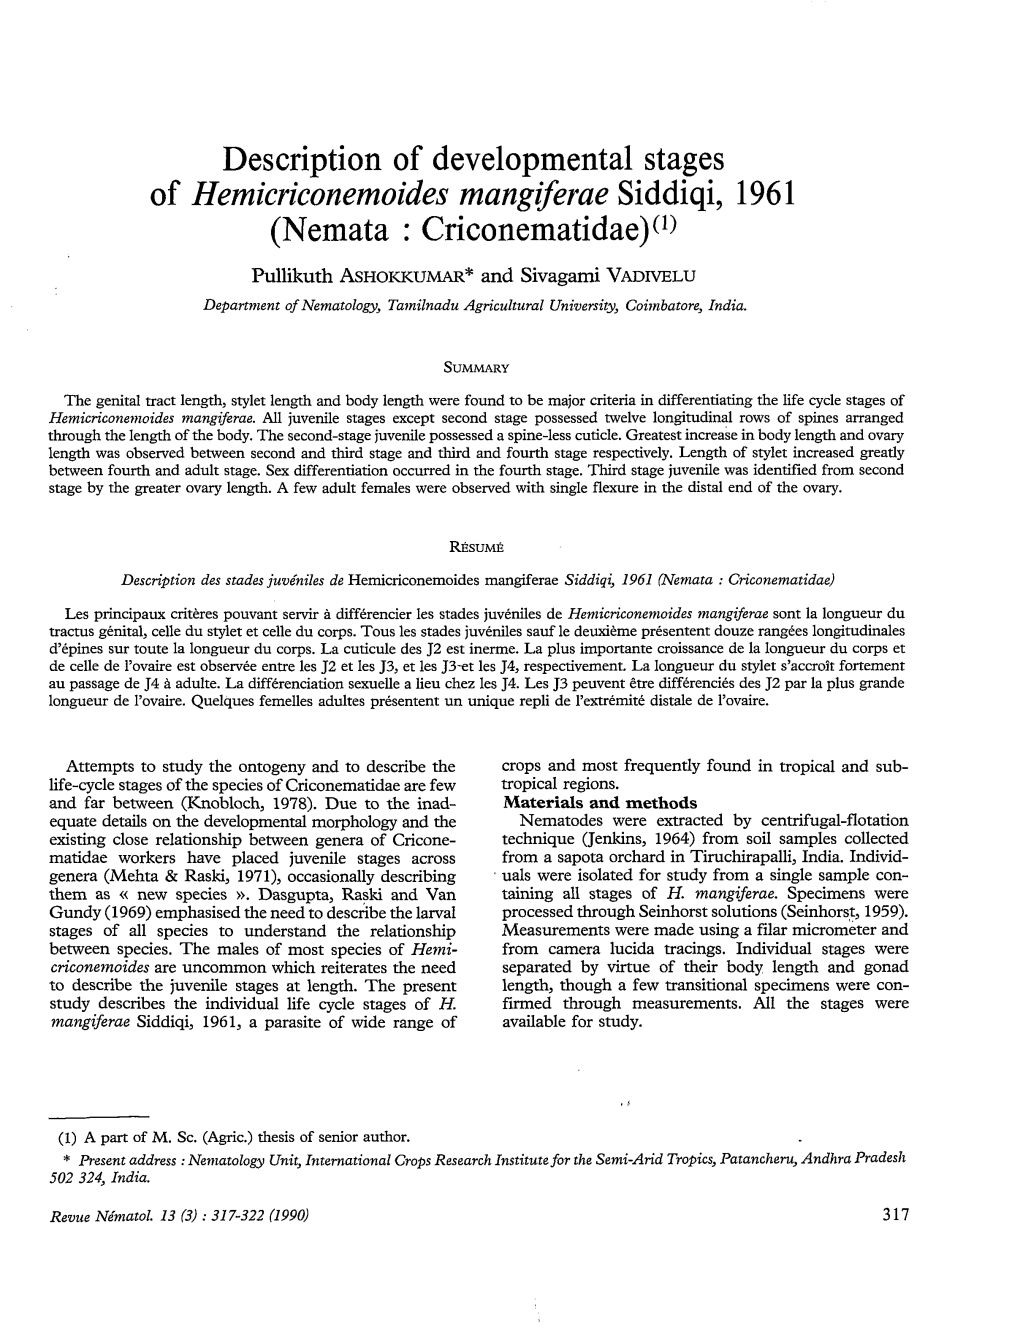 Of Hemicriconemoides Mangiferae Siddiqi, 196 1